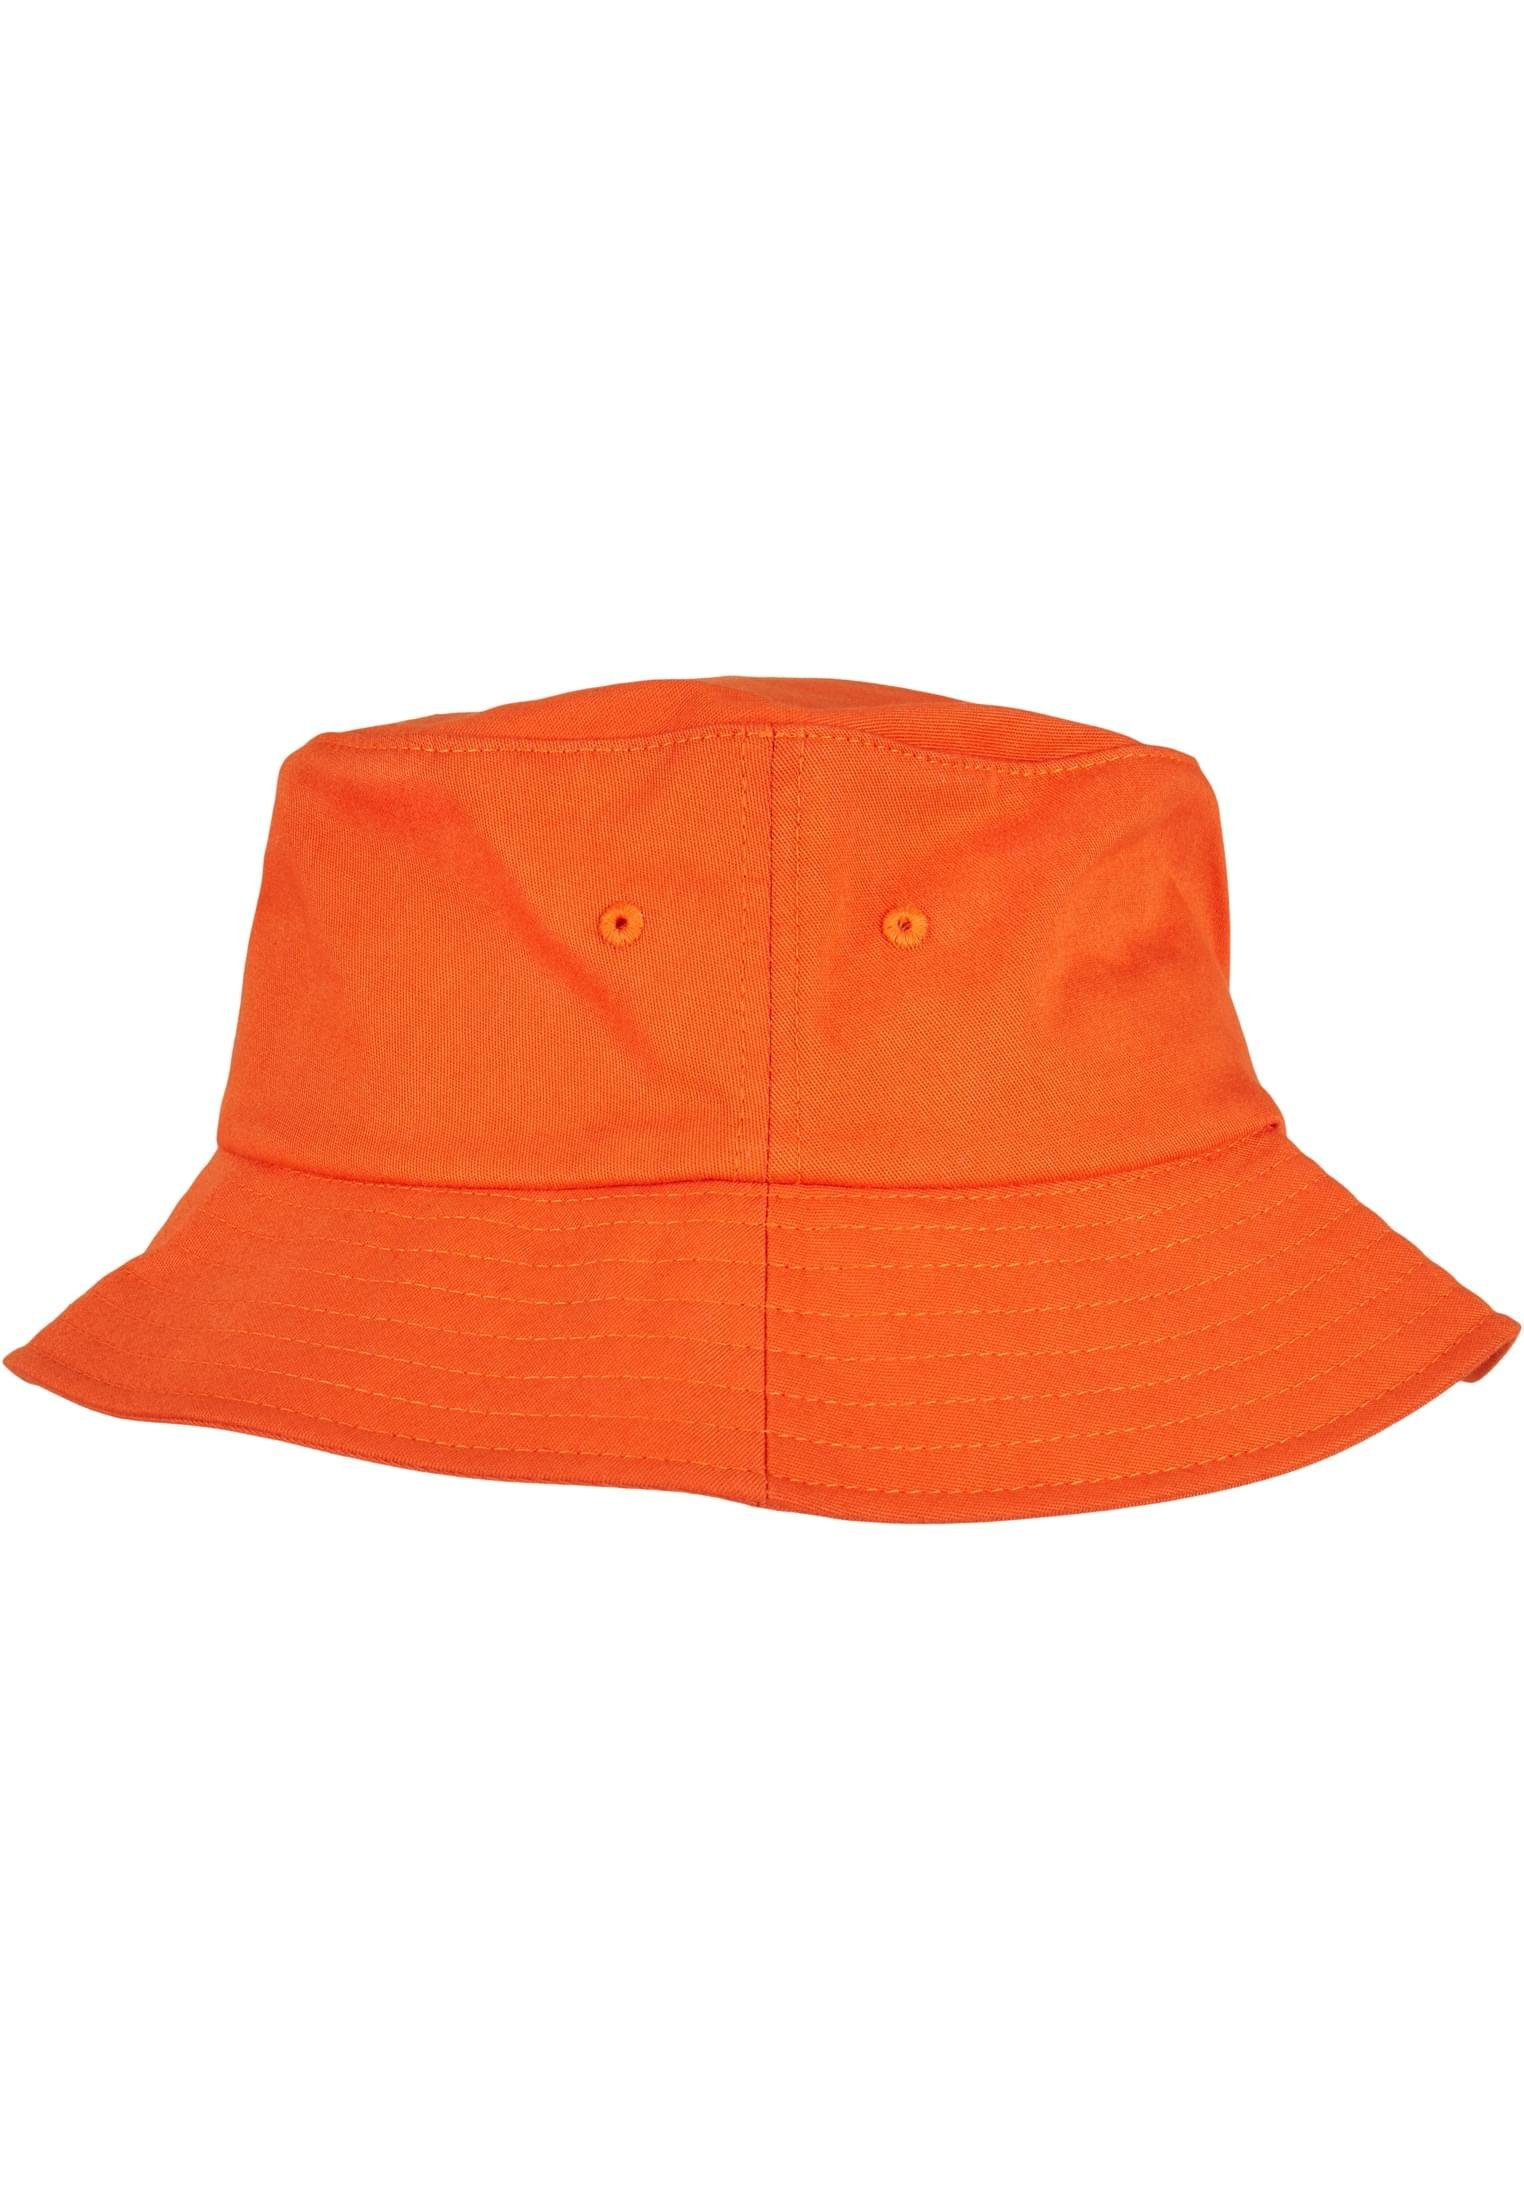 Bucket Flexfit Flexfit Accessoires Hat Twill Flex orange Cotton Cap